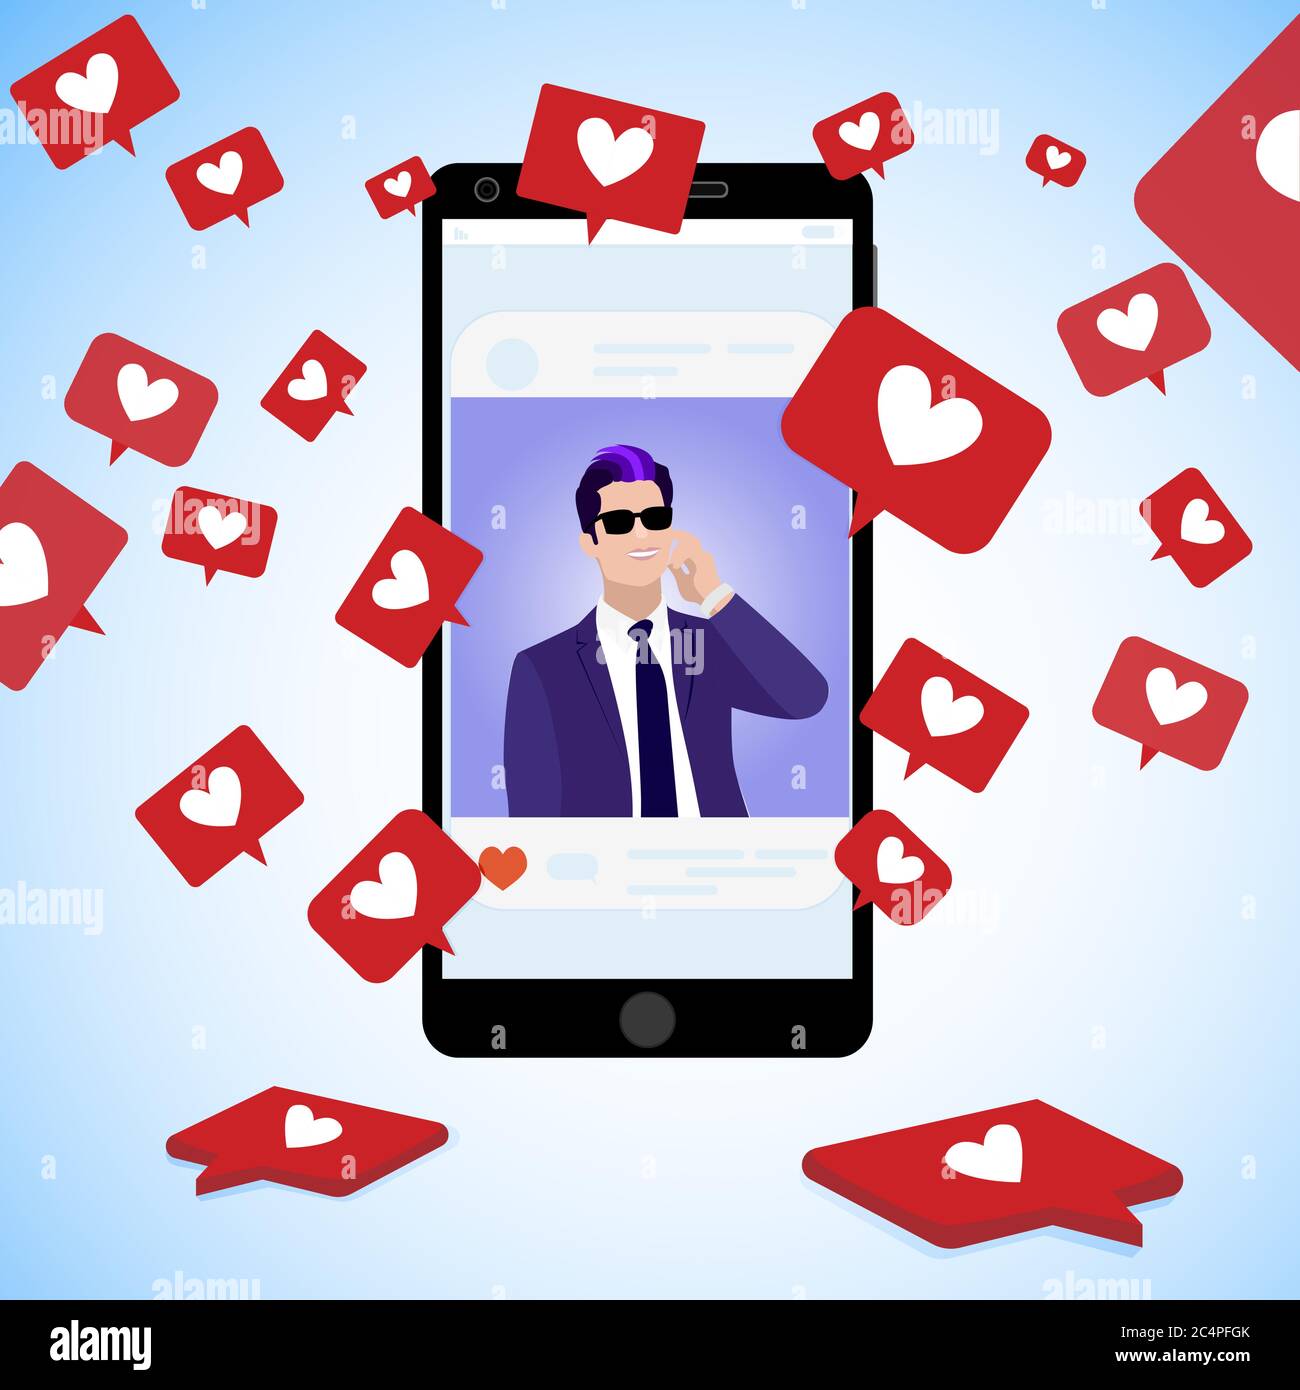 Célèbre blogger post, collectez les icônes sociales cœur rouge, la communication en ligne en utilisant les médias sociaux, beau homme page populaire de capture popularité. Vecteur illu Illustration de Vecteur